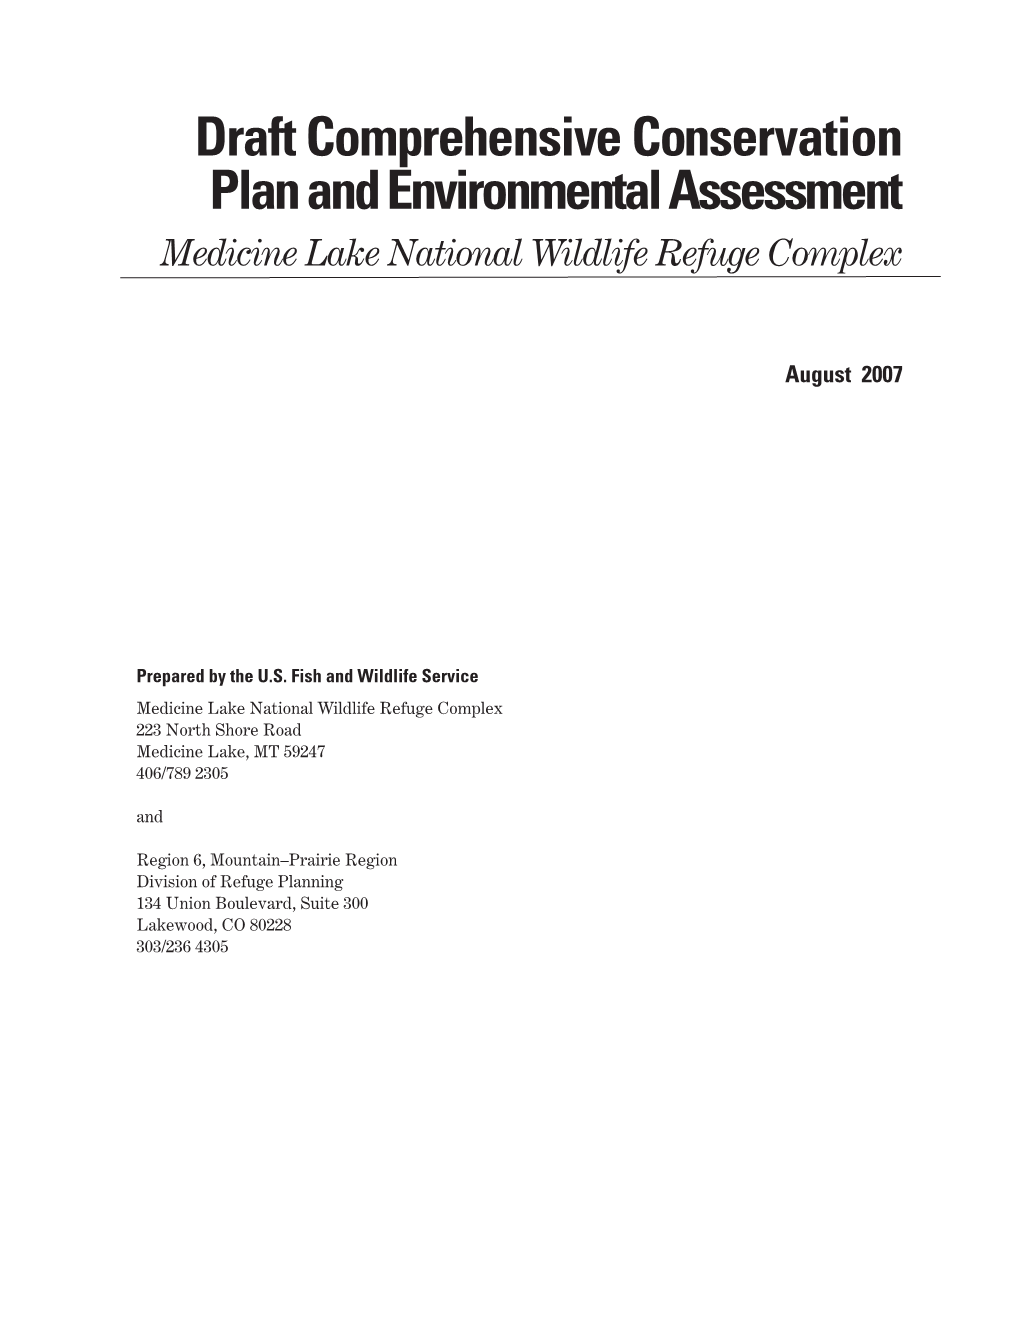 Draft Comprehensive Conservation Plan, Medicine Lake National